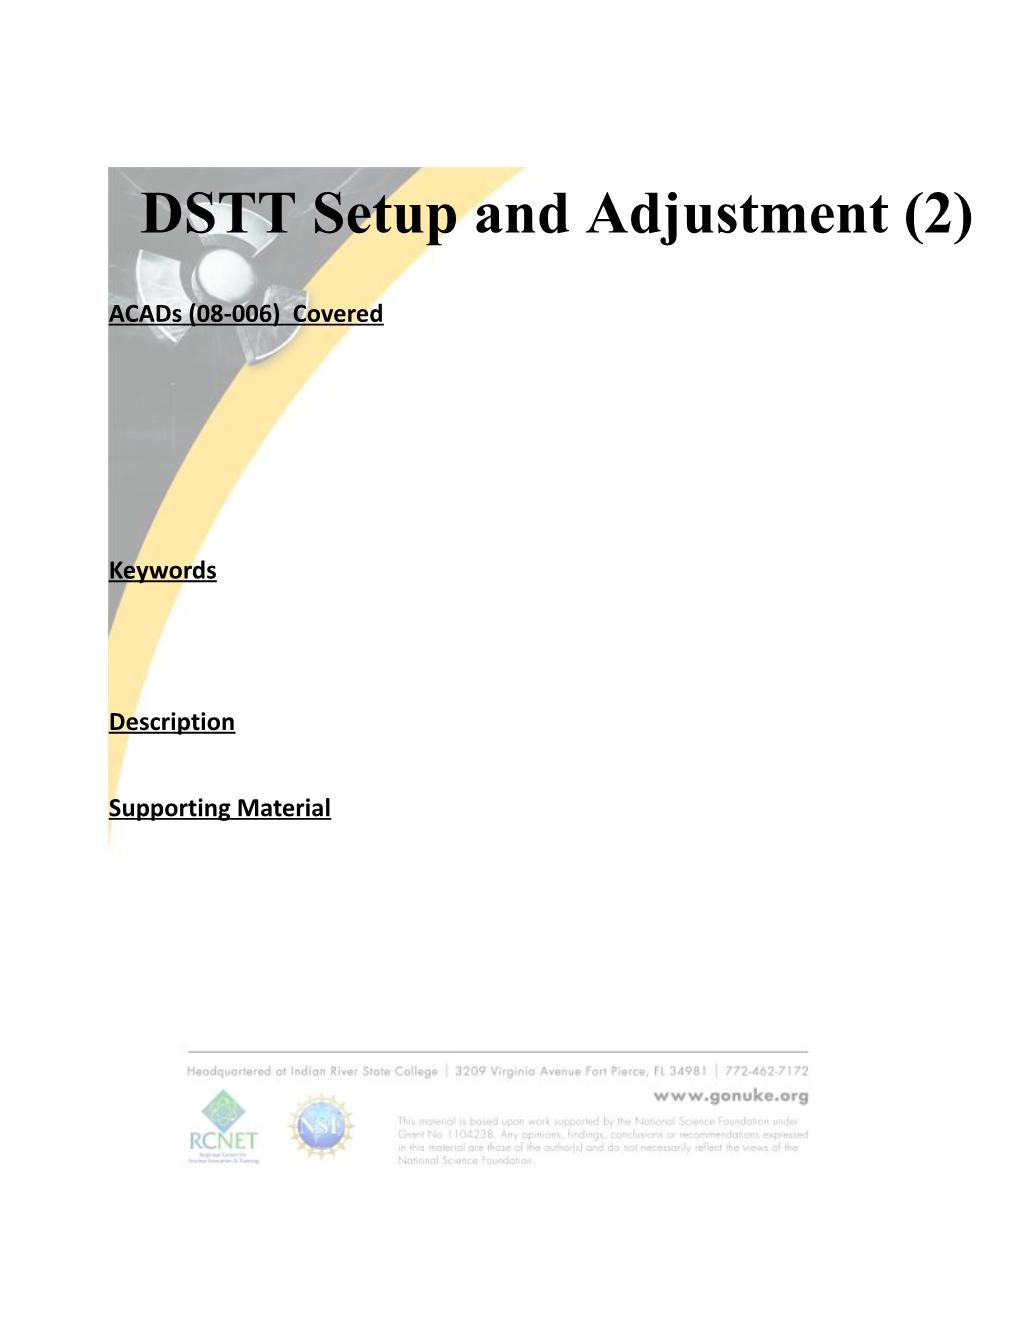 DSTT Setup and Adjustment